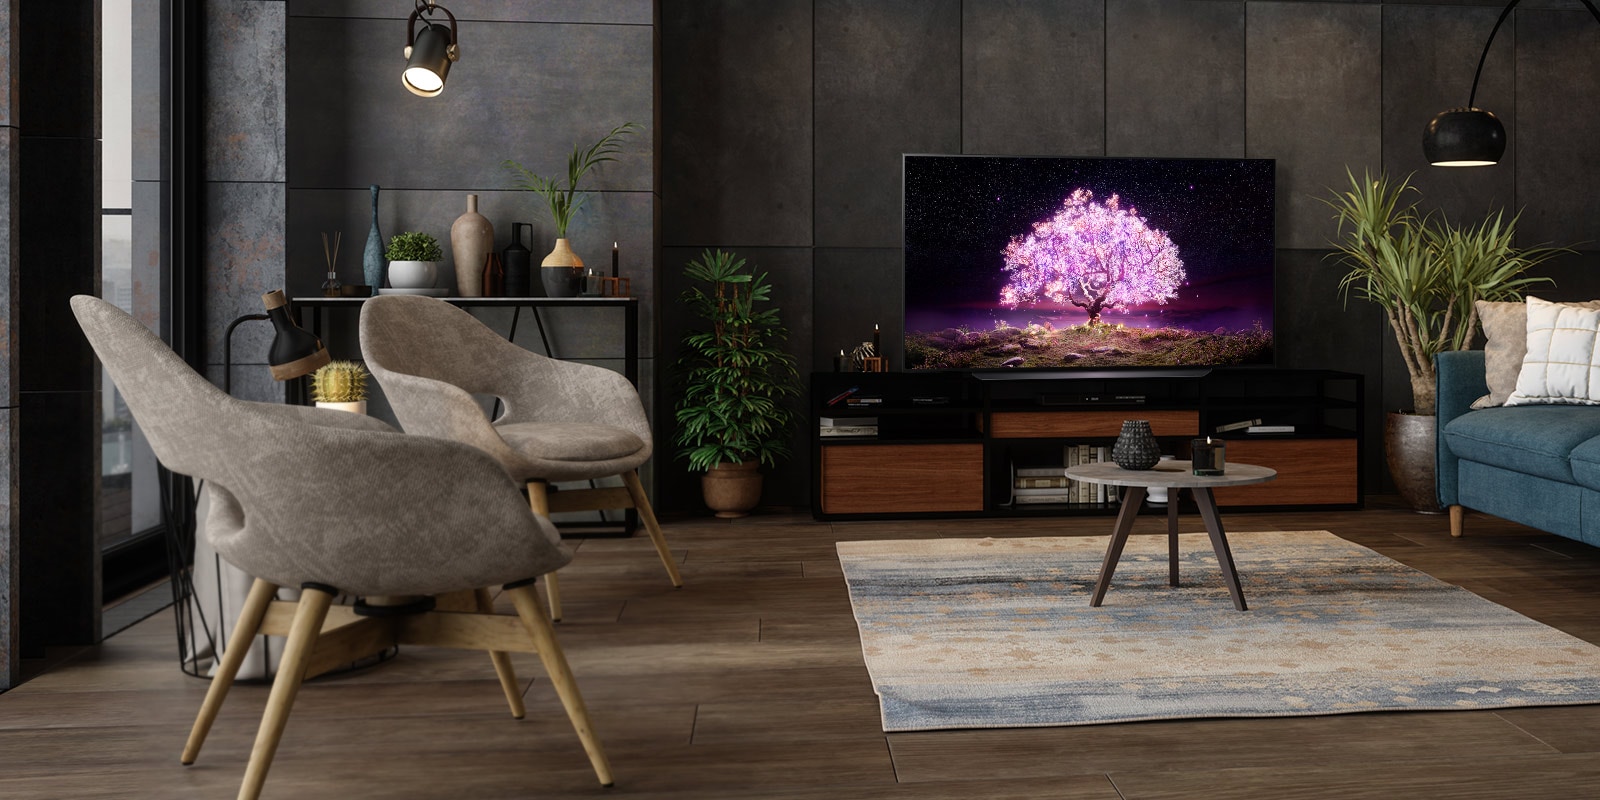 Televizor koji prikazuje stablo koje ispušta ljubičastu svjetlost u luksuznom kućnom okruženju